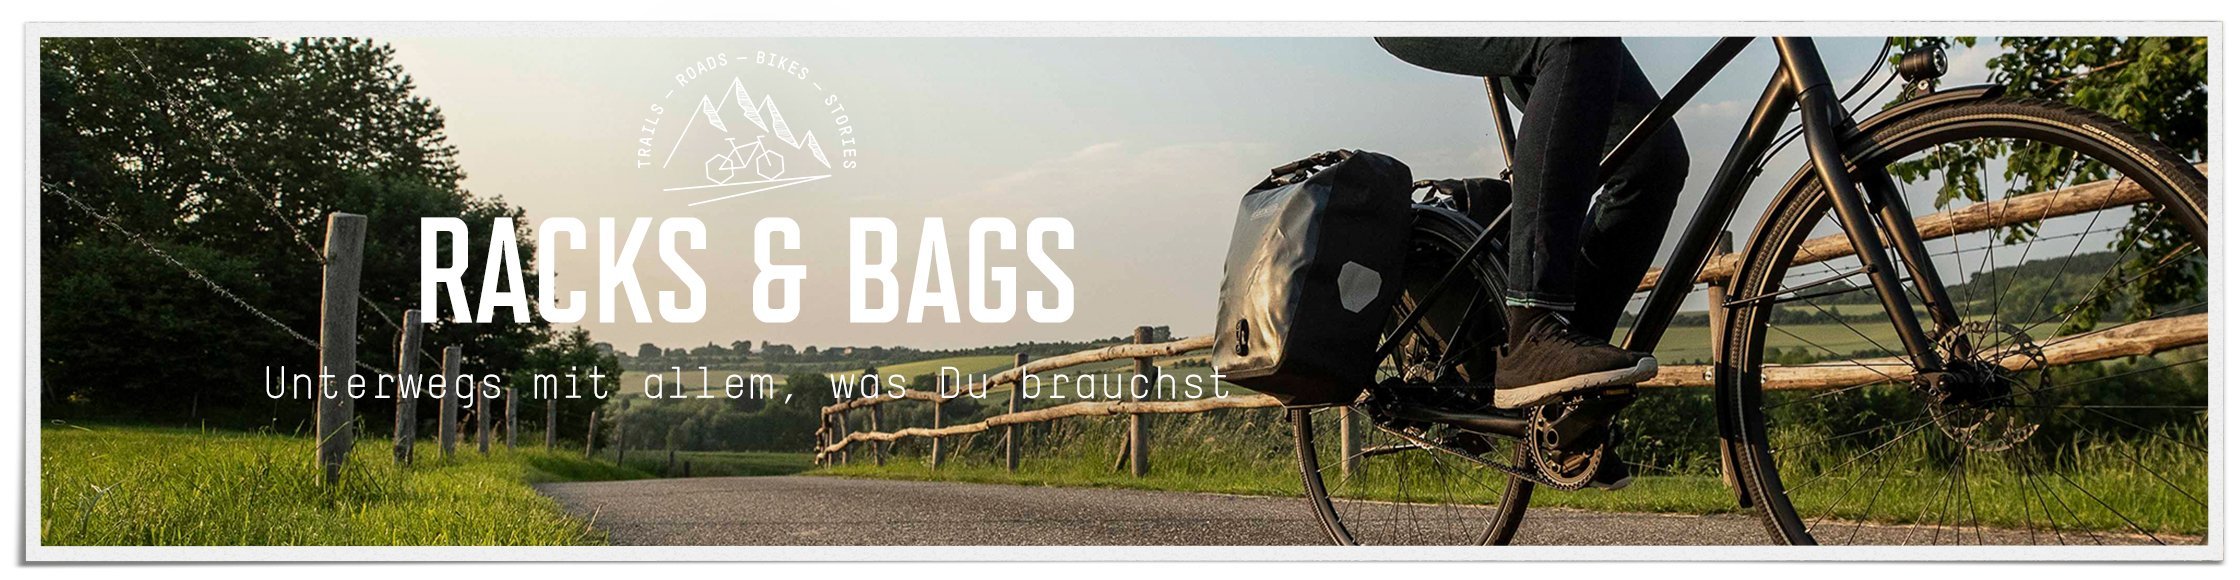 Racks & Bags: Radfahrerin radelt auf einer ruhigen, asphaltierten Straße in der Natur mit zwei großen Ortlieb-Gepäcktaschen am Gepäckträger